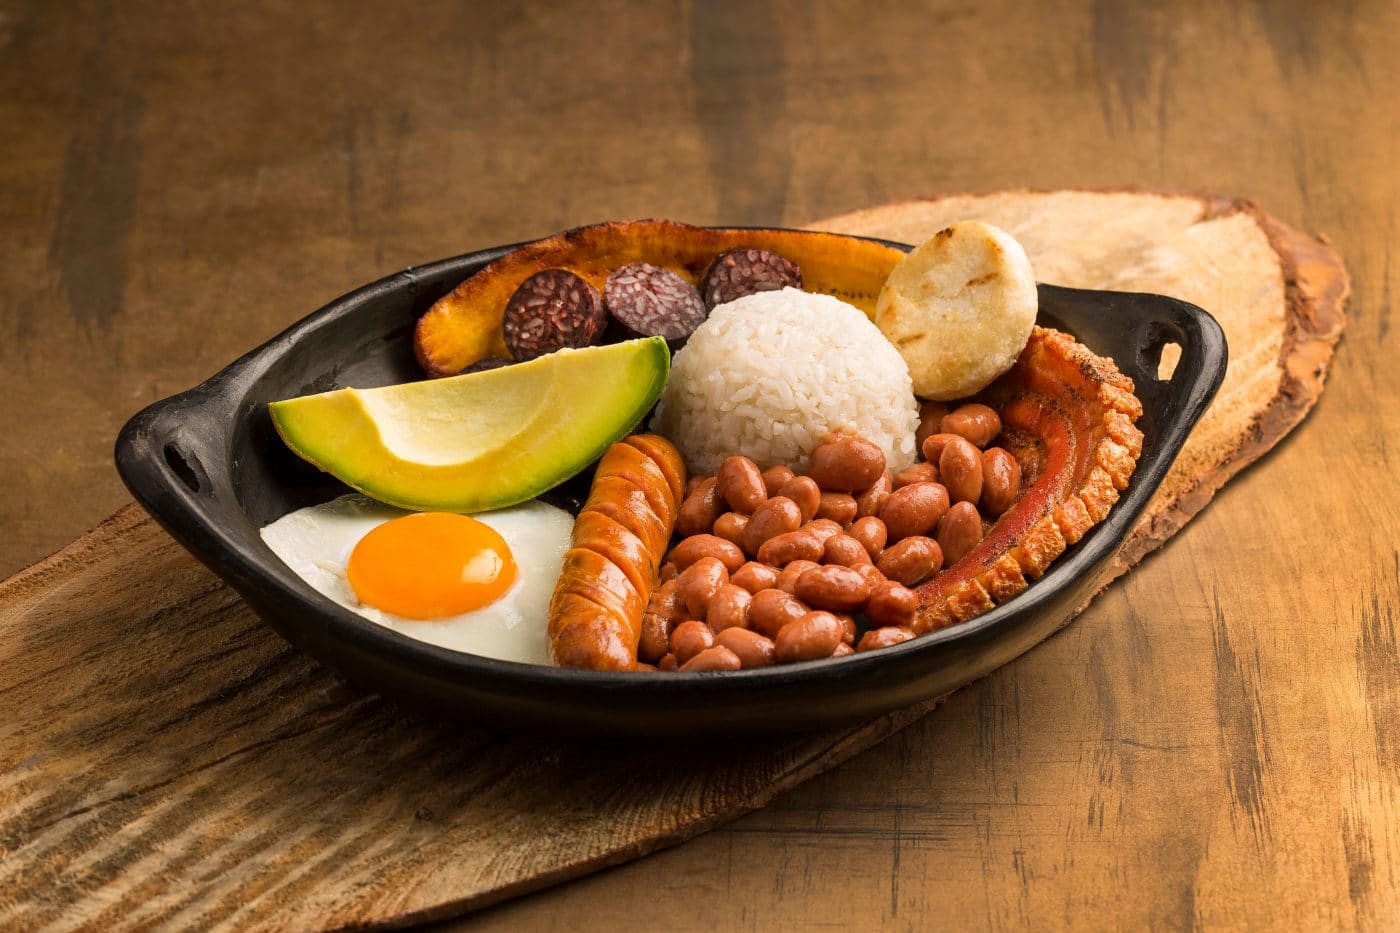 Platos típicos de la gastronomía colombiana